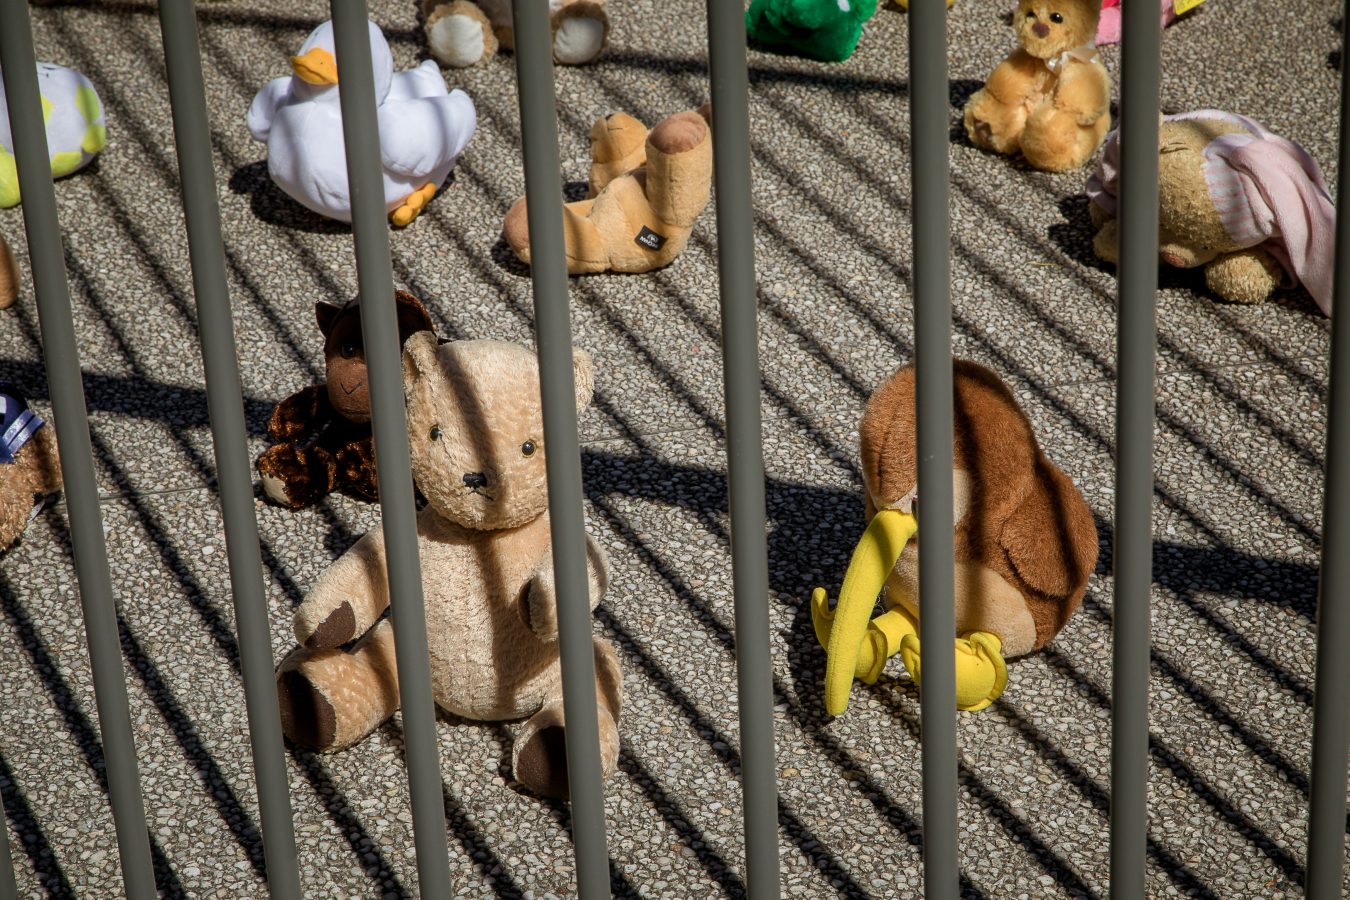 Image of stuffed teddies behind metal bars